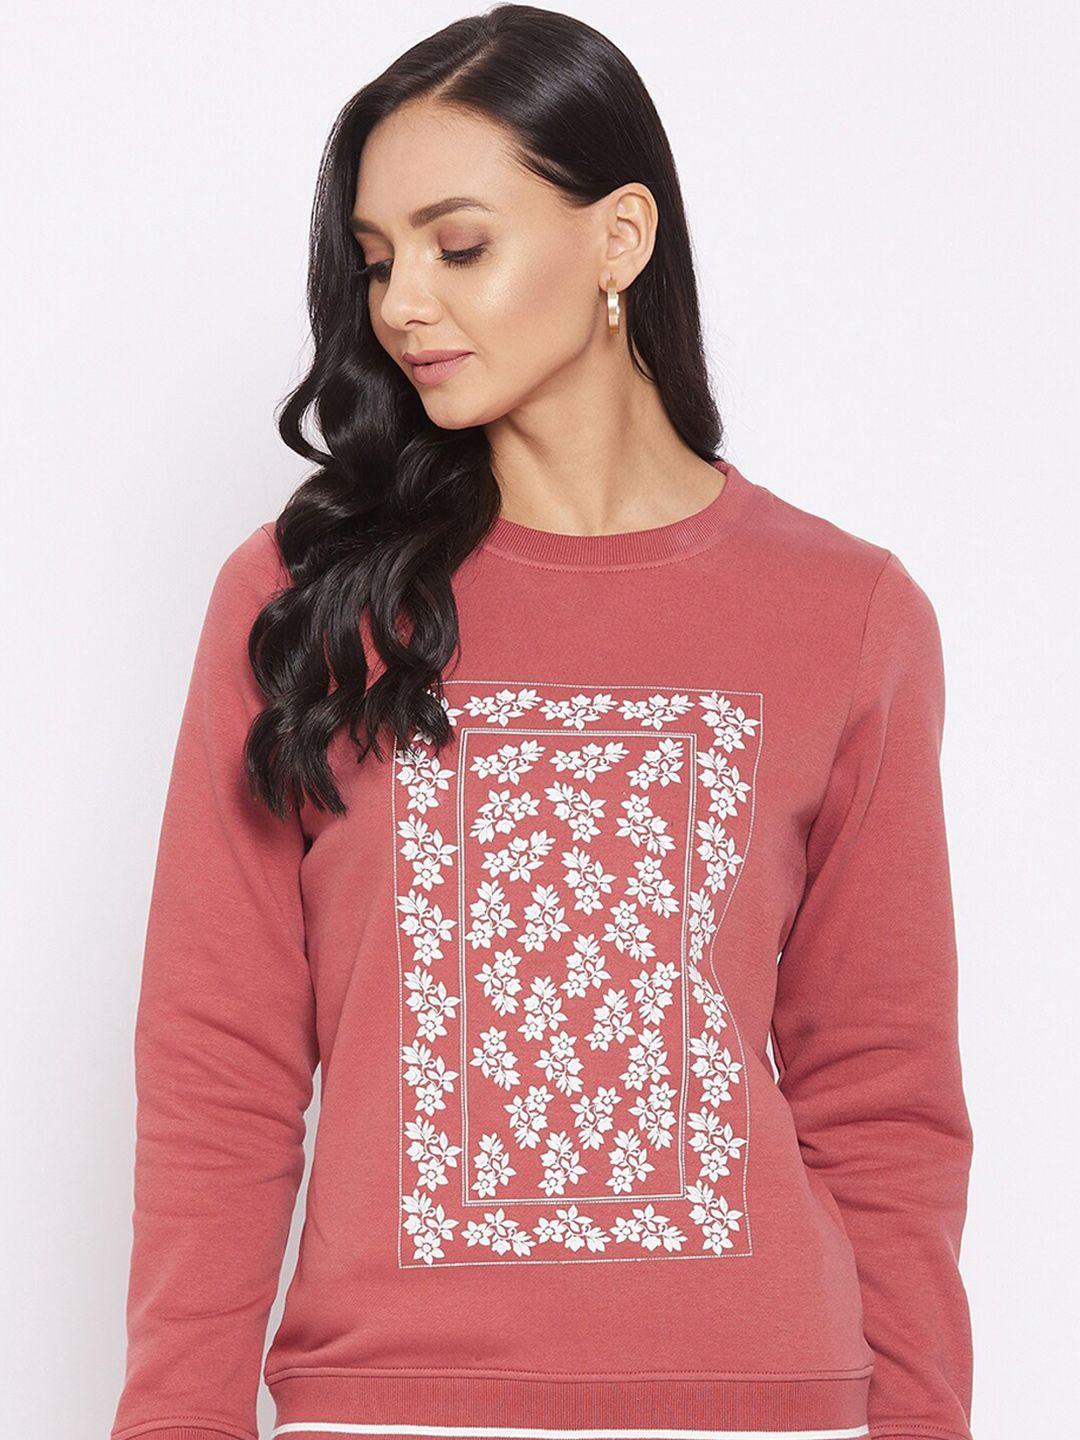 harbor n bay floral printed fleece sweatshirt